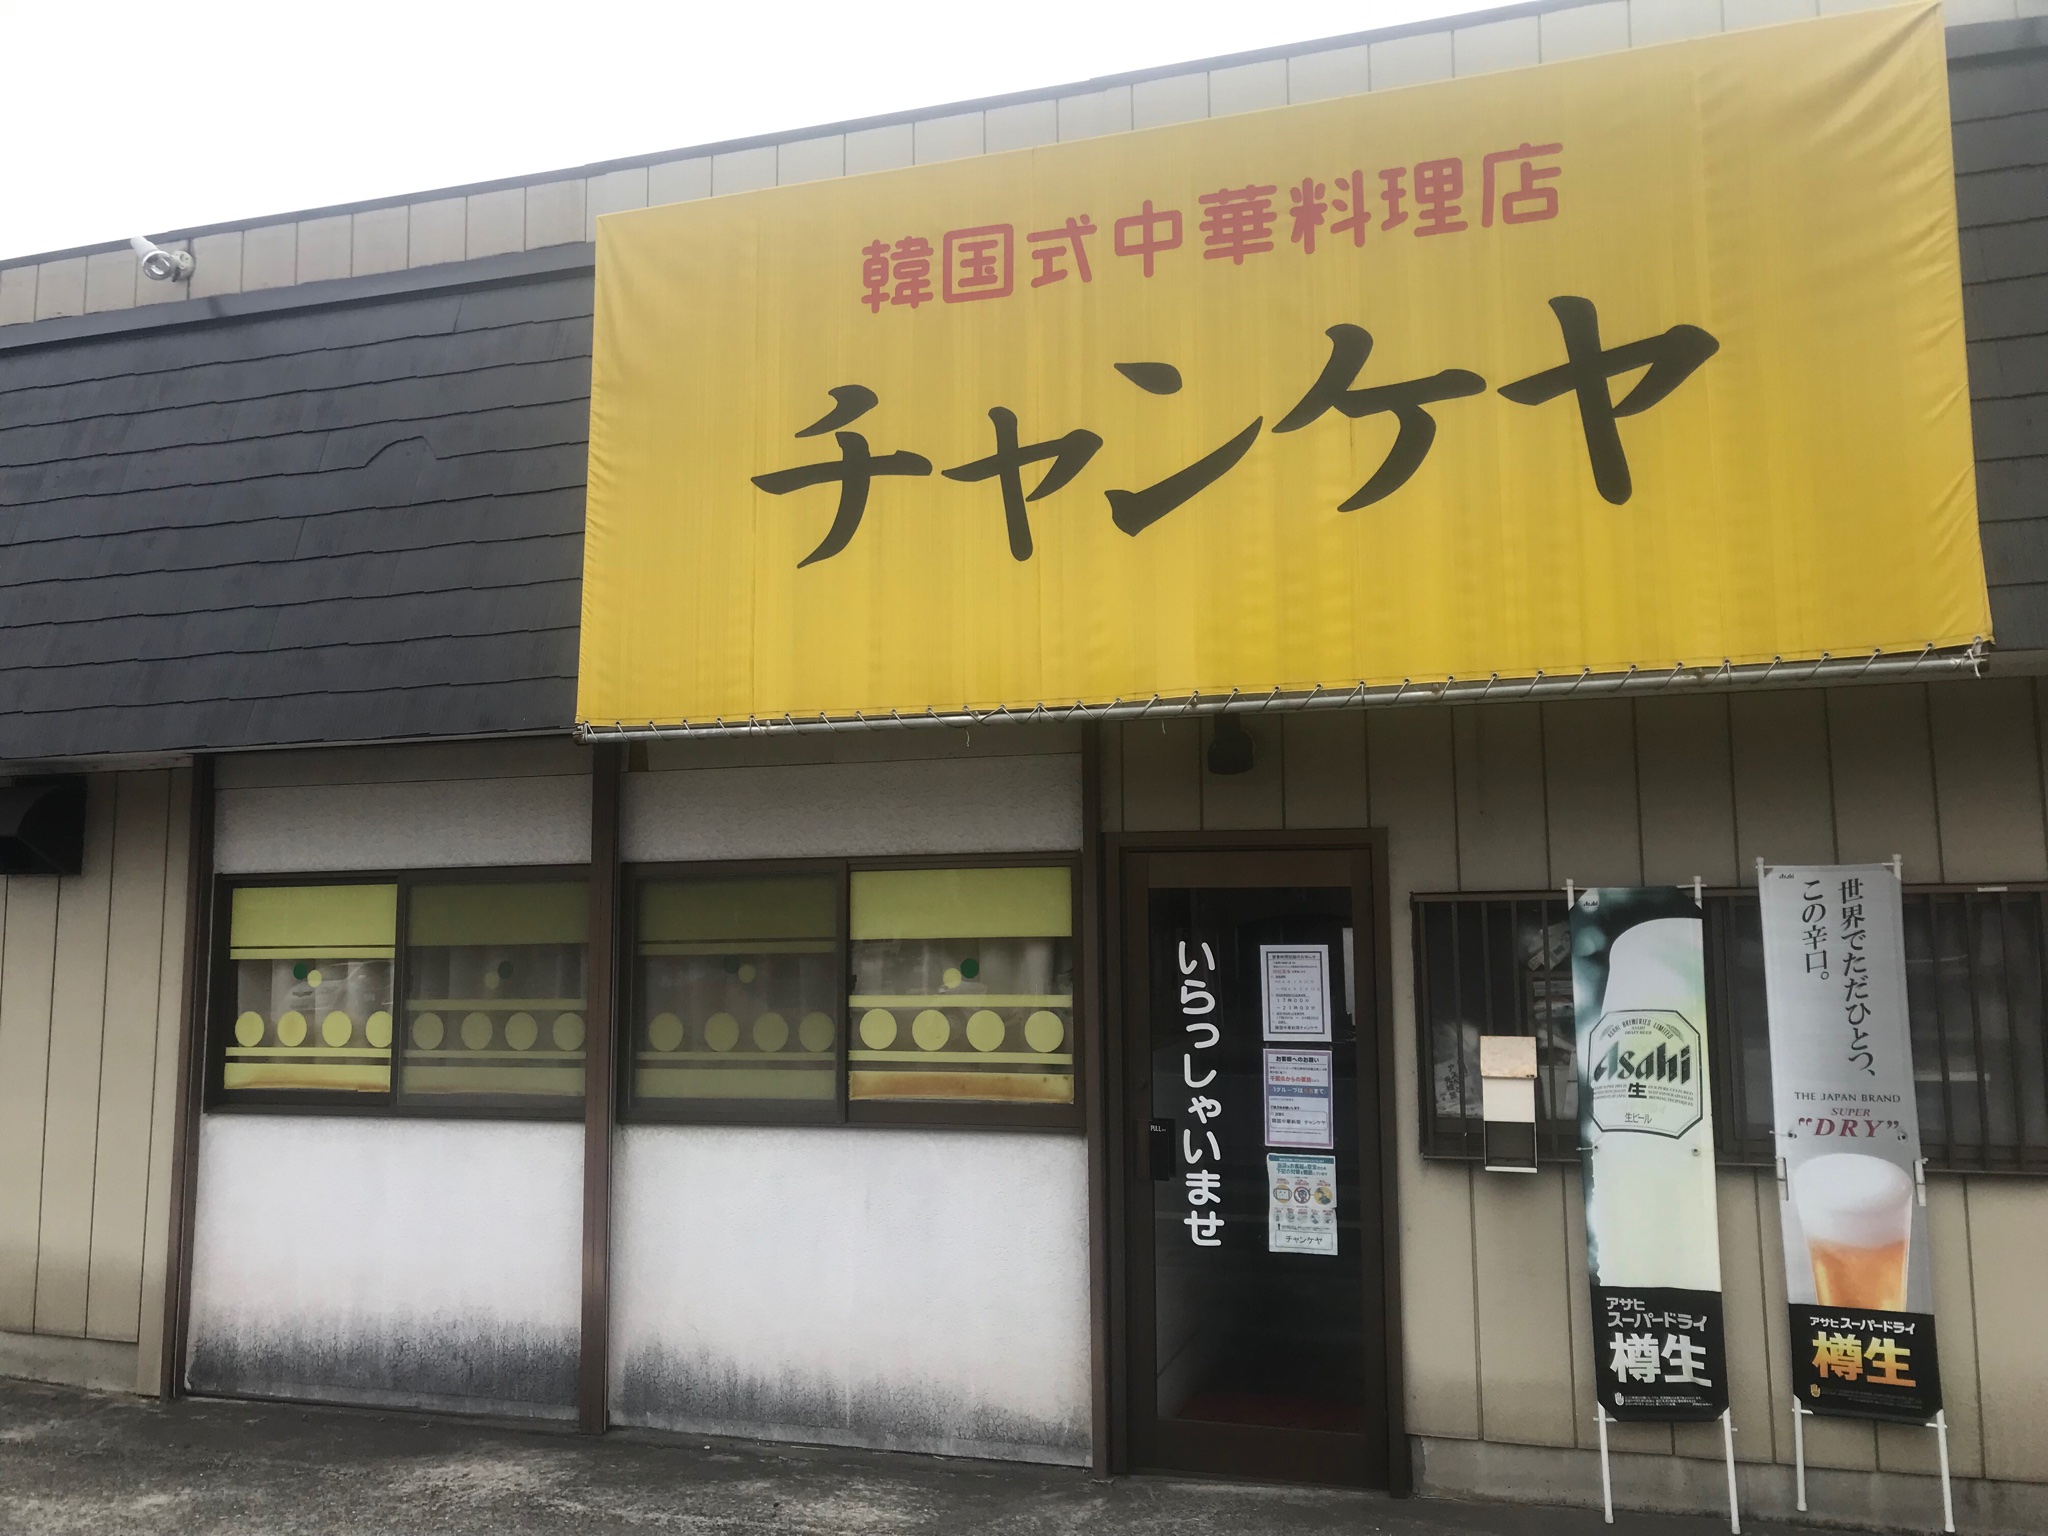 일본에 있는 한국식 중식당 가게